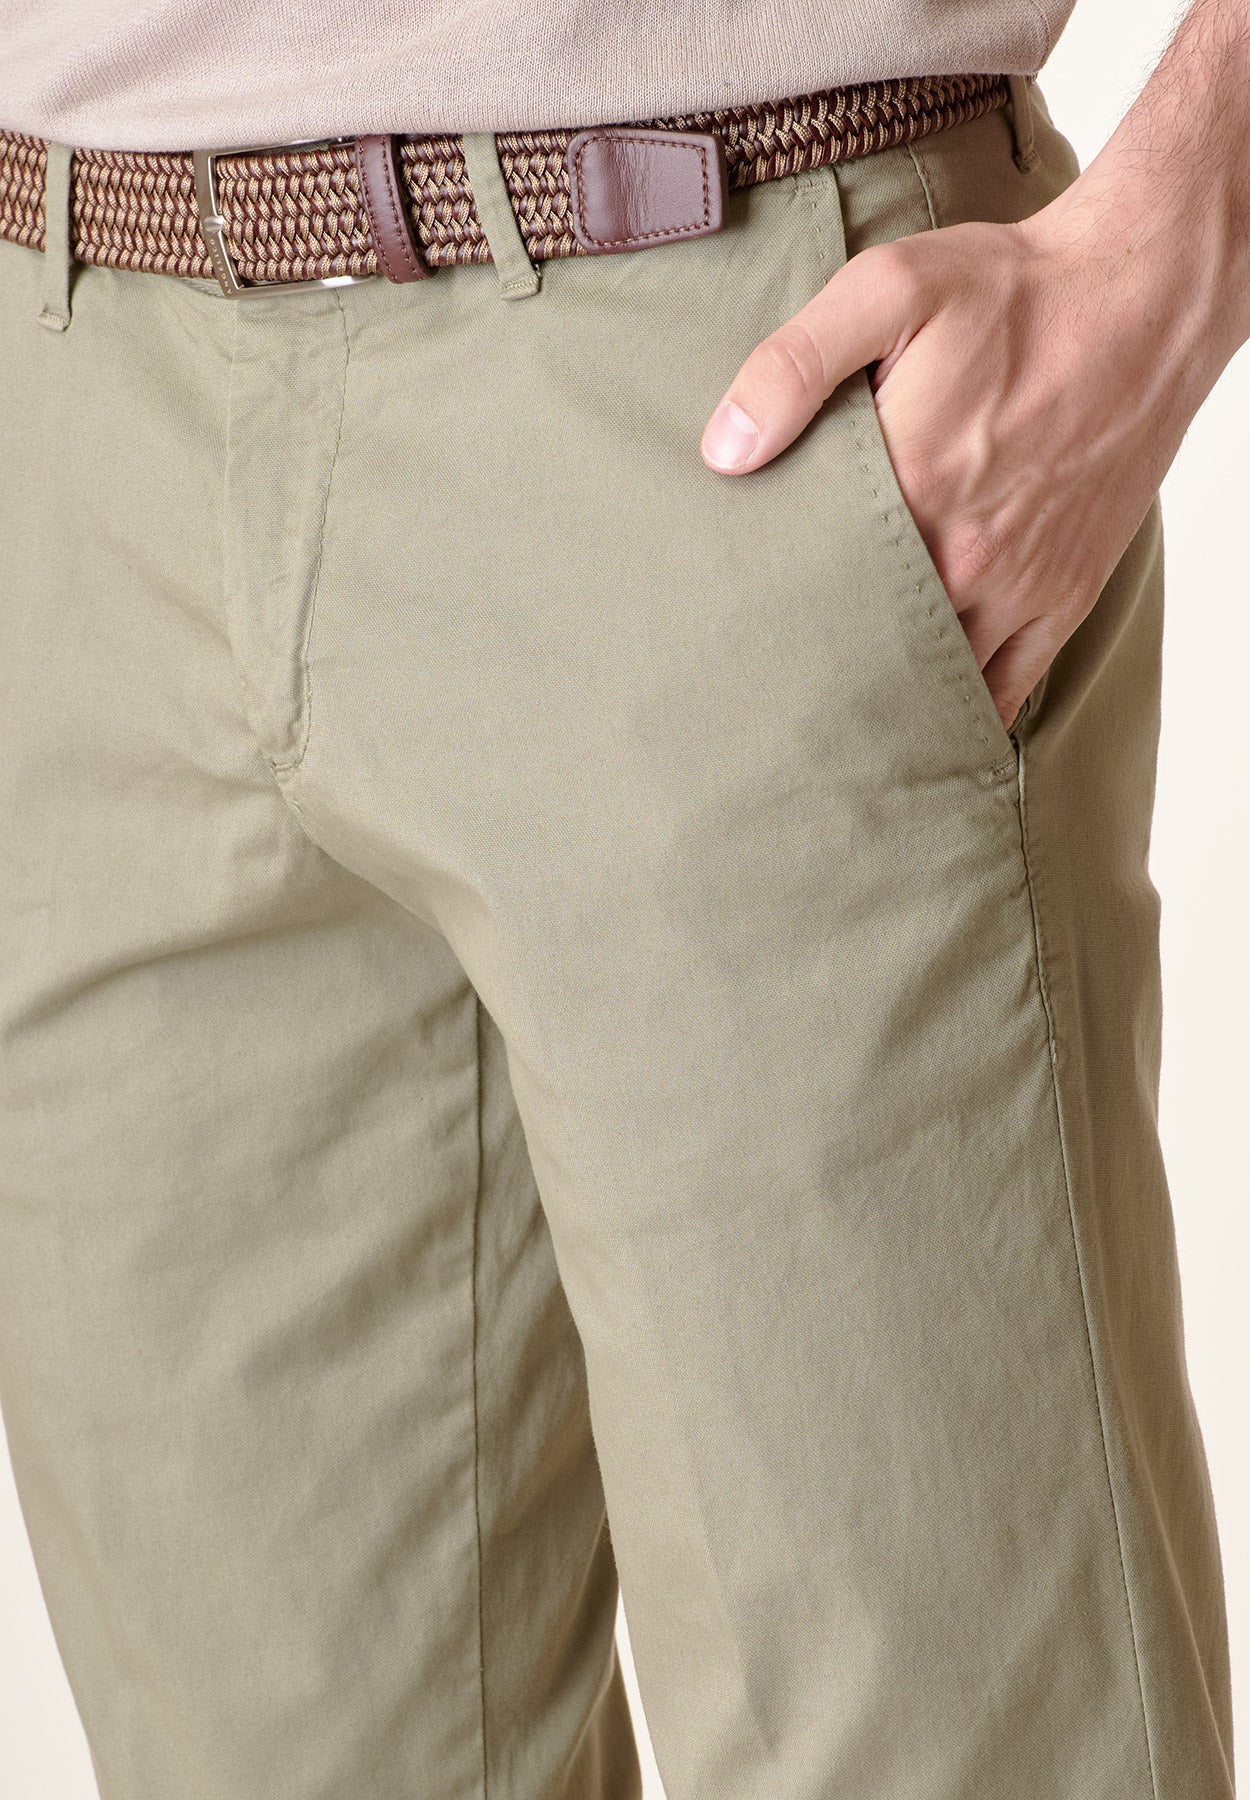 Salbeifarbene Hose aus Stretch-Baumwolle mit normaler Passform